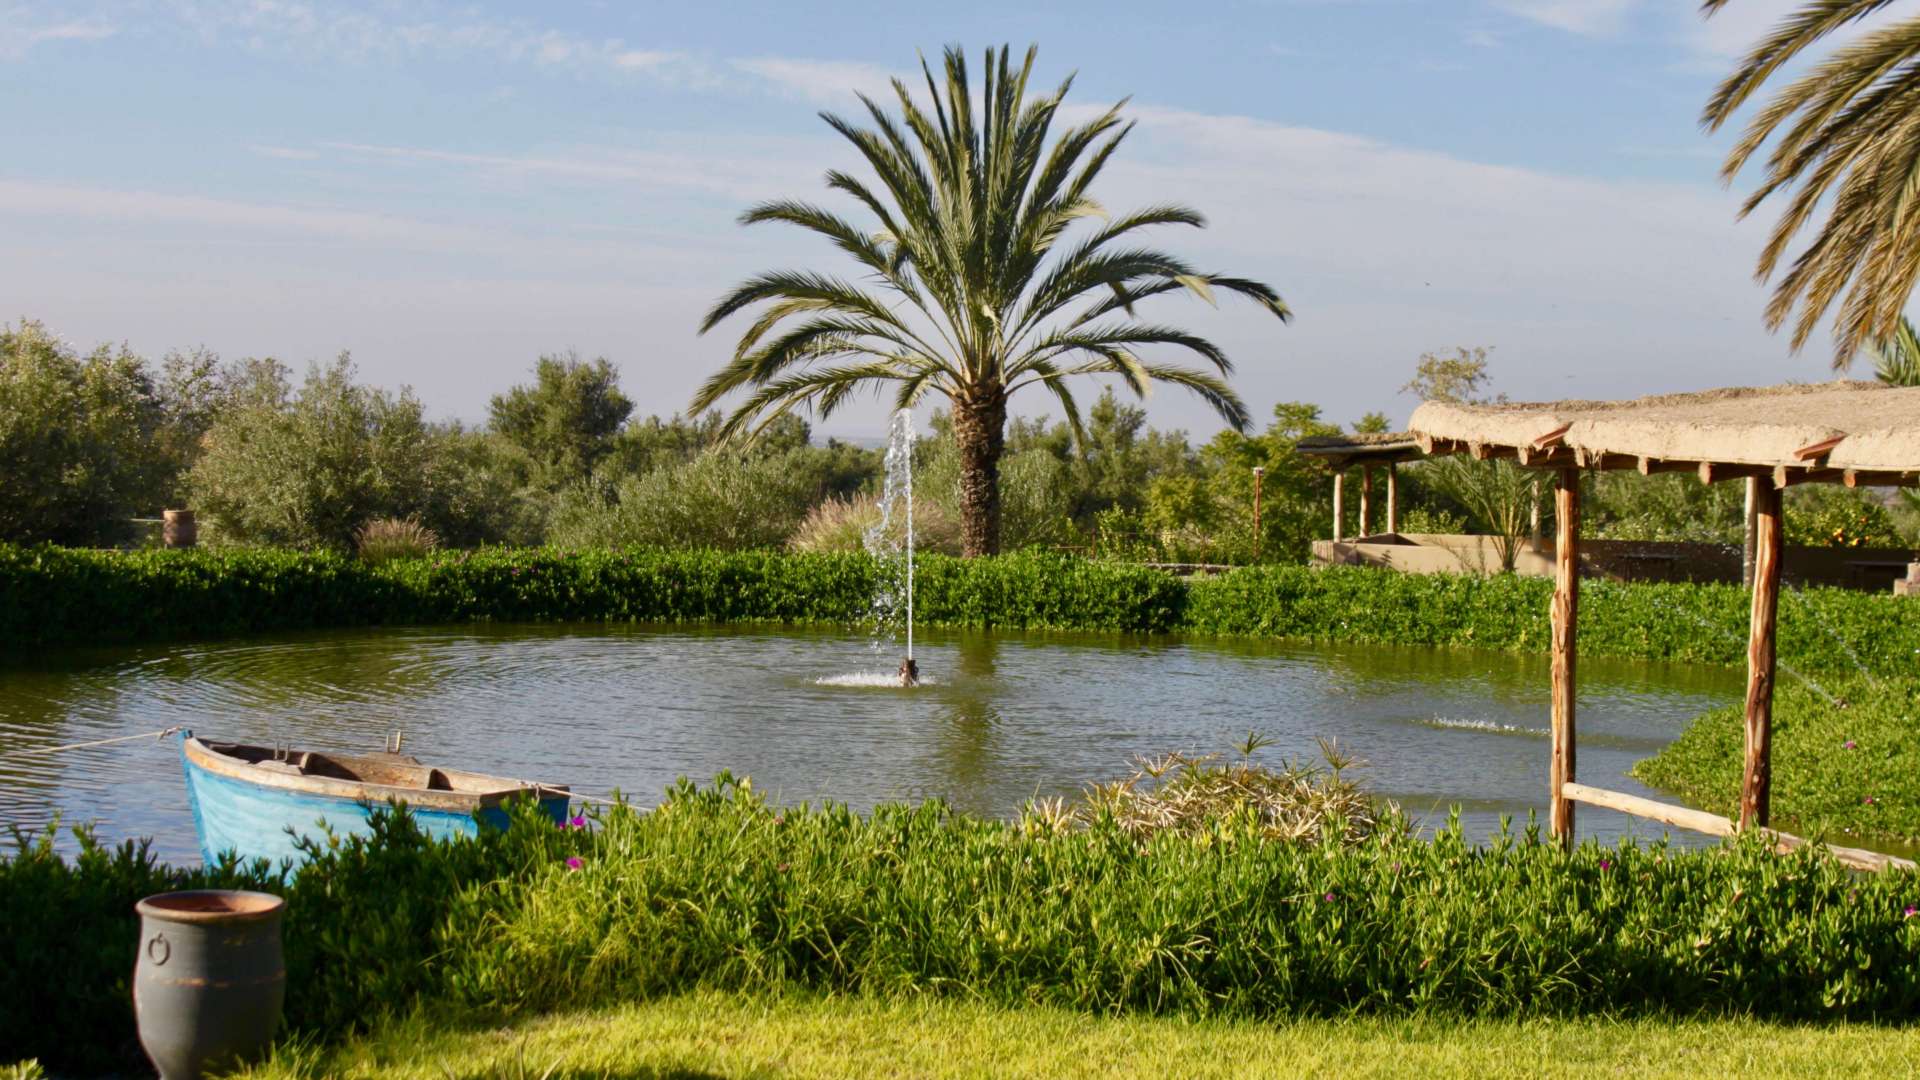 Vente,Villa,Propriété privée de 7ch style Kasbah avec tennis et un splendide parc d'un hectare,Marrakech,Route d'Agadir-Essaouira